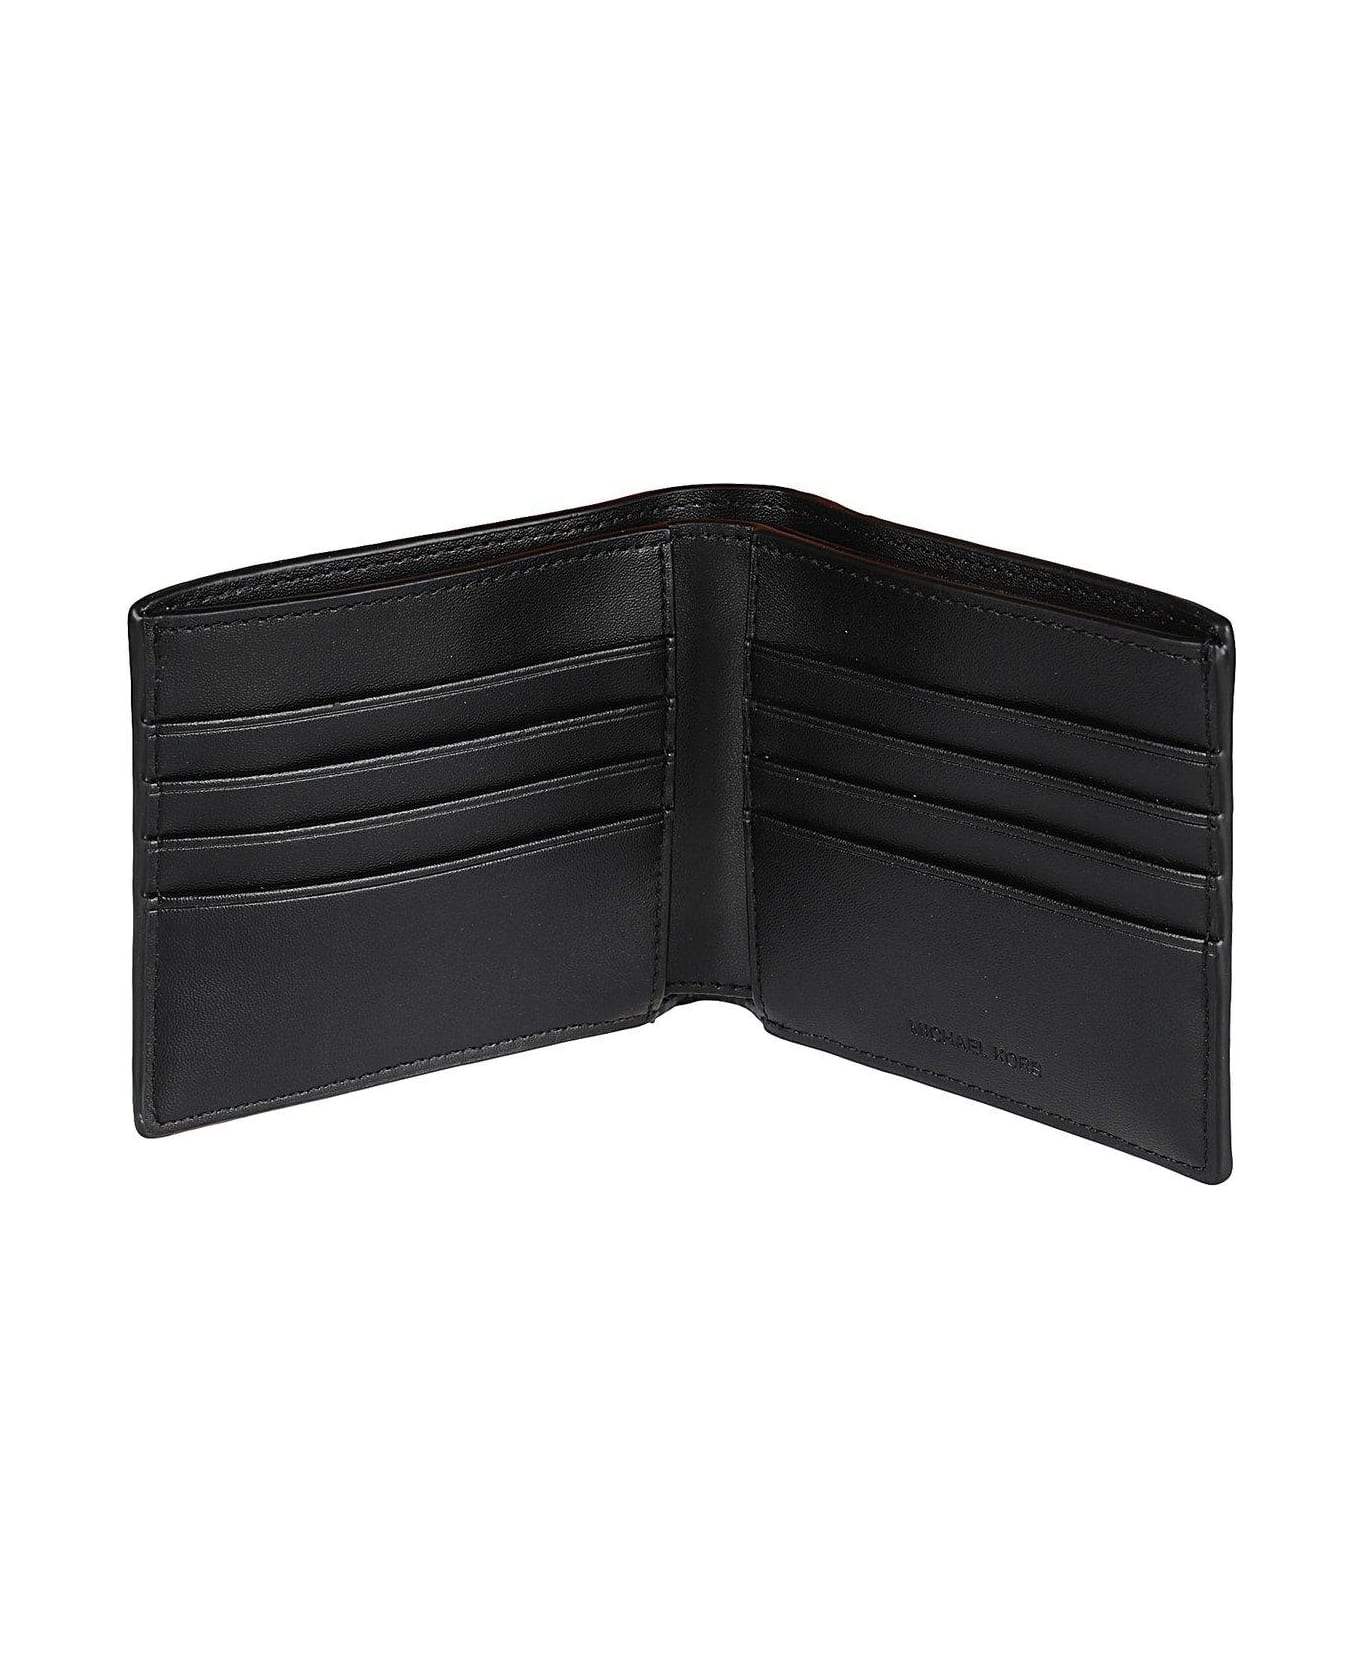 Michael Kors Hudson Bi-fold Wallet - Black 財布